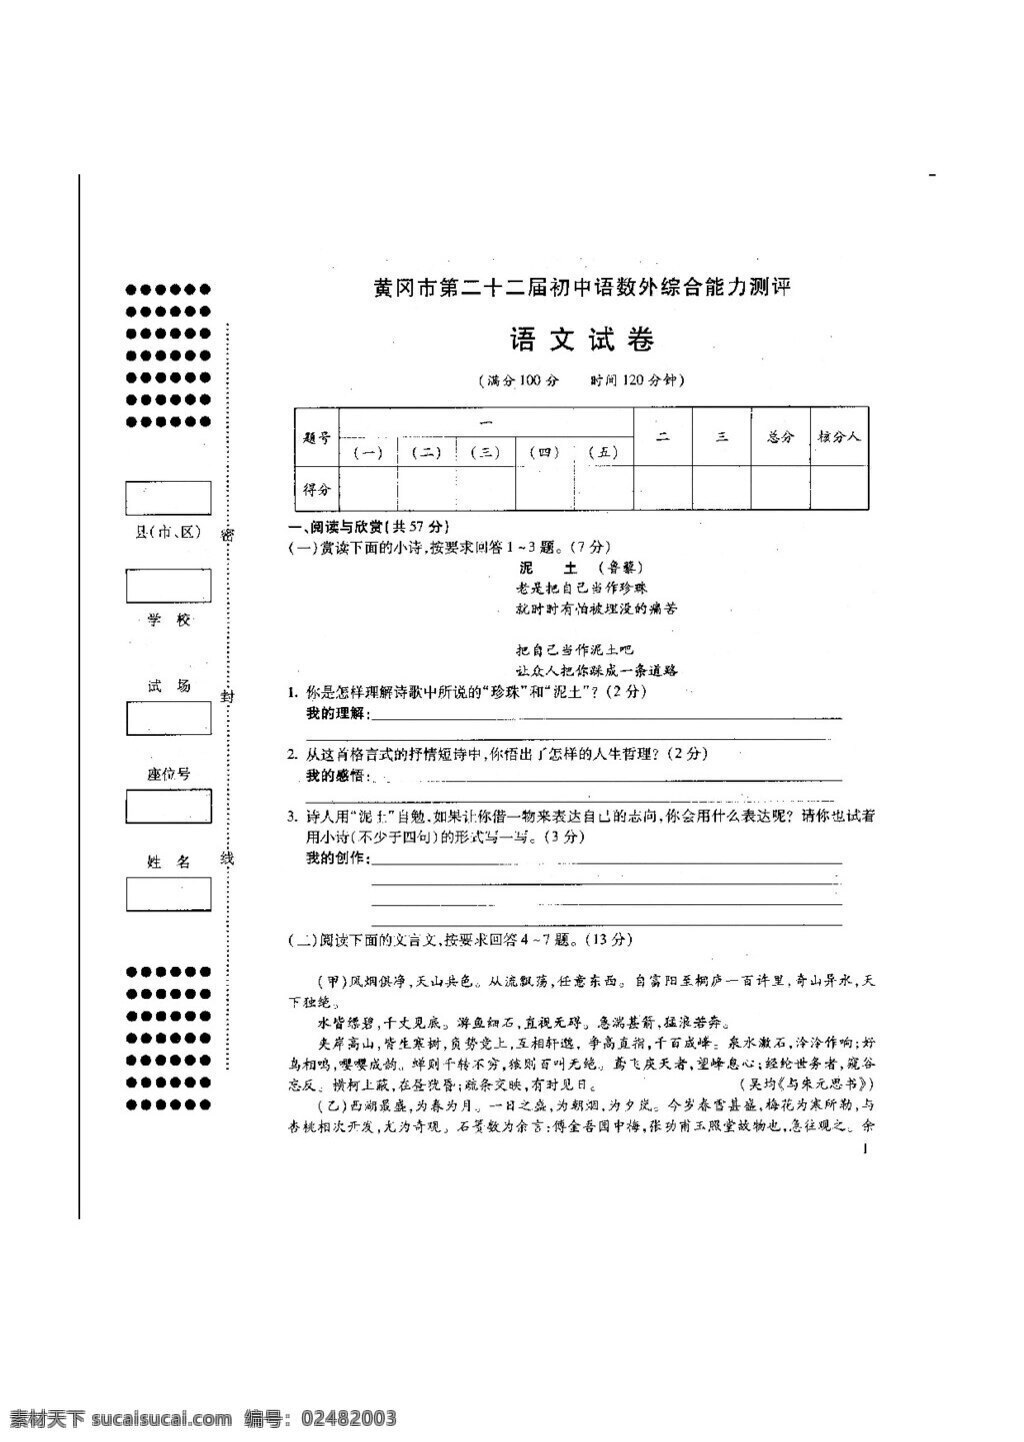 语文 人教 版 月 黄冈市 二 十 届 初中 语 外 综合 能力 测评 试卷 人教版 试题试卷